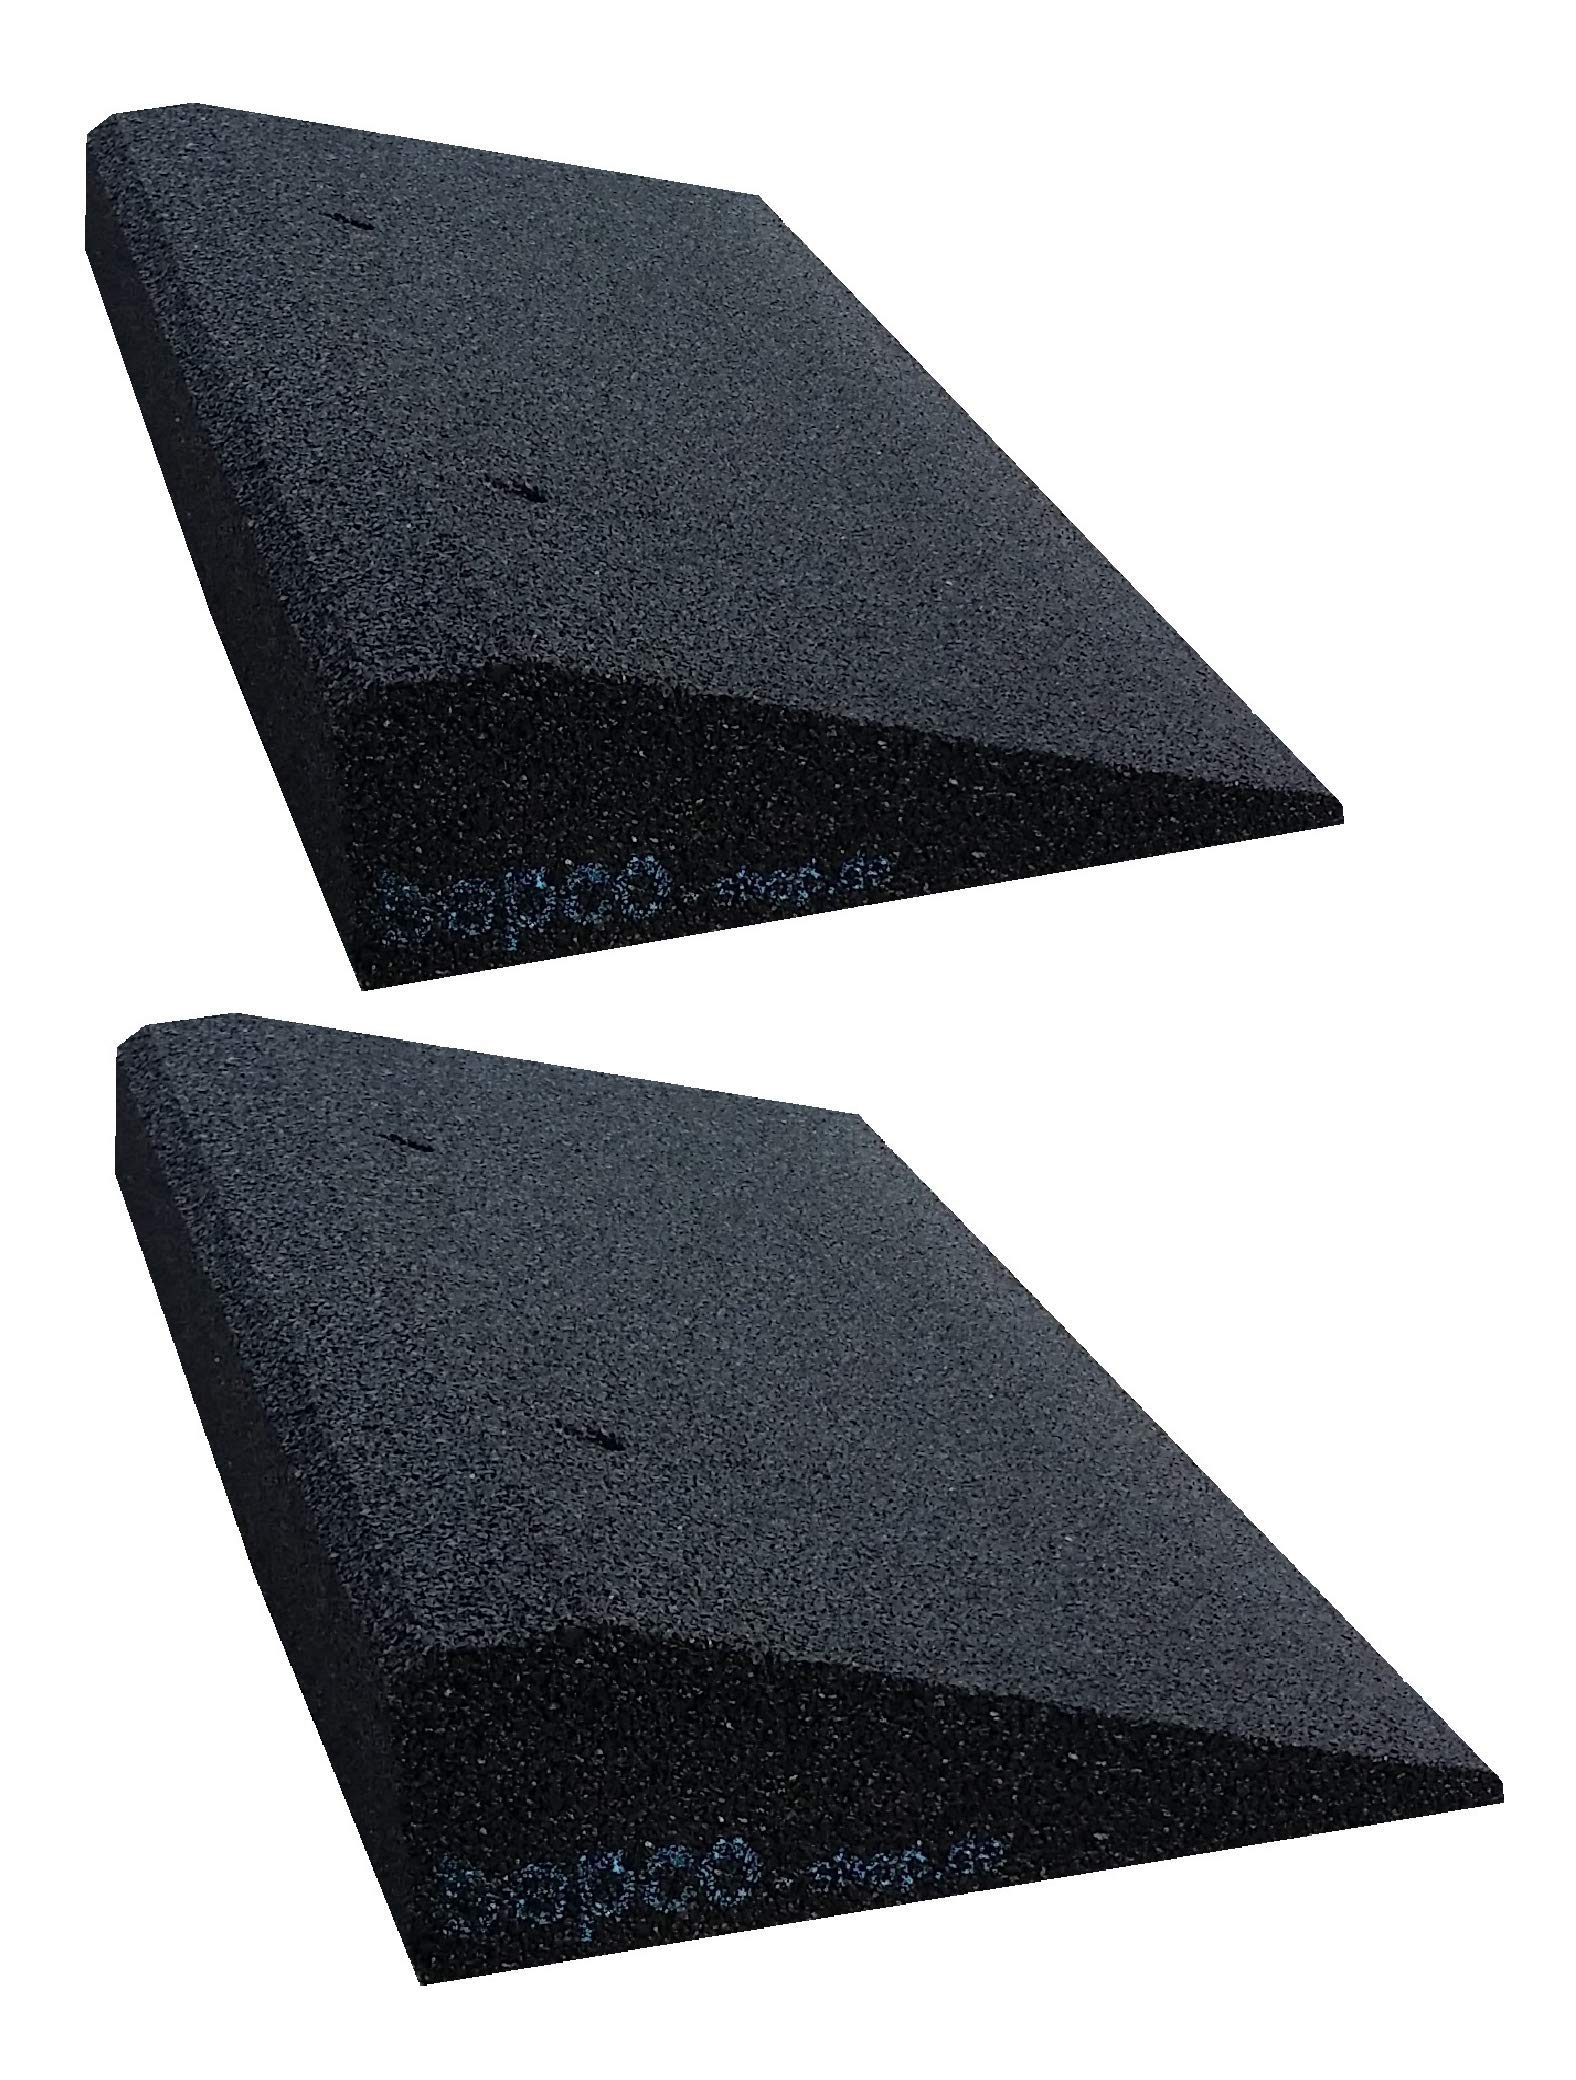 bepco Bordsteinkanten-Rampe-Set (2 Stück) LxBxH: 50 x 25 x 4 cm aus Gummi (schwarz) Auffahrrampe,Türschwellenrampe, mit eingelagerten Unterlegscheiben zur Befestigung